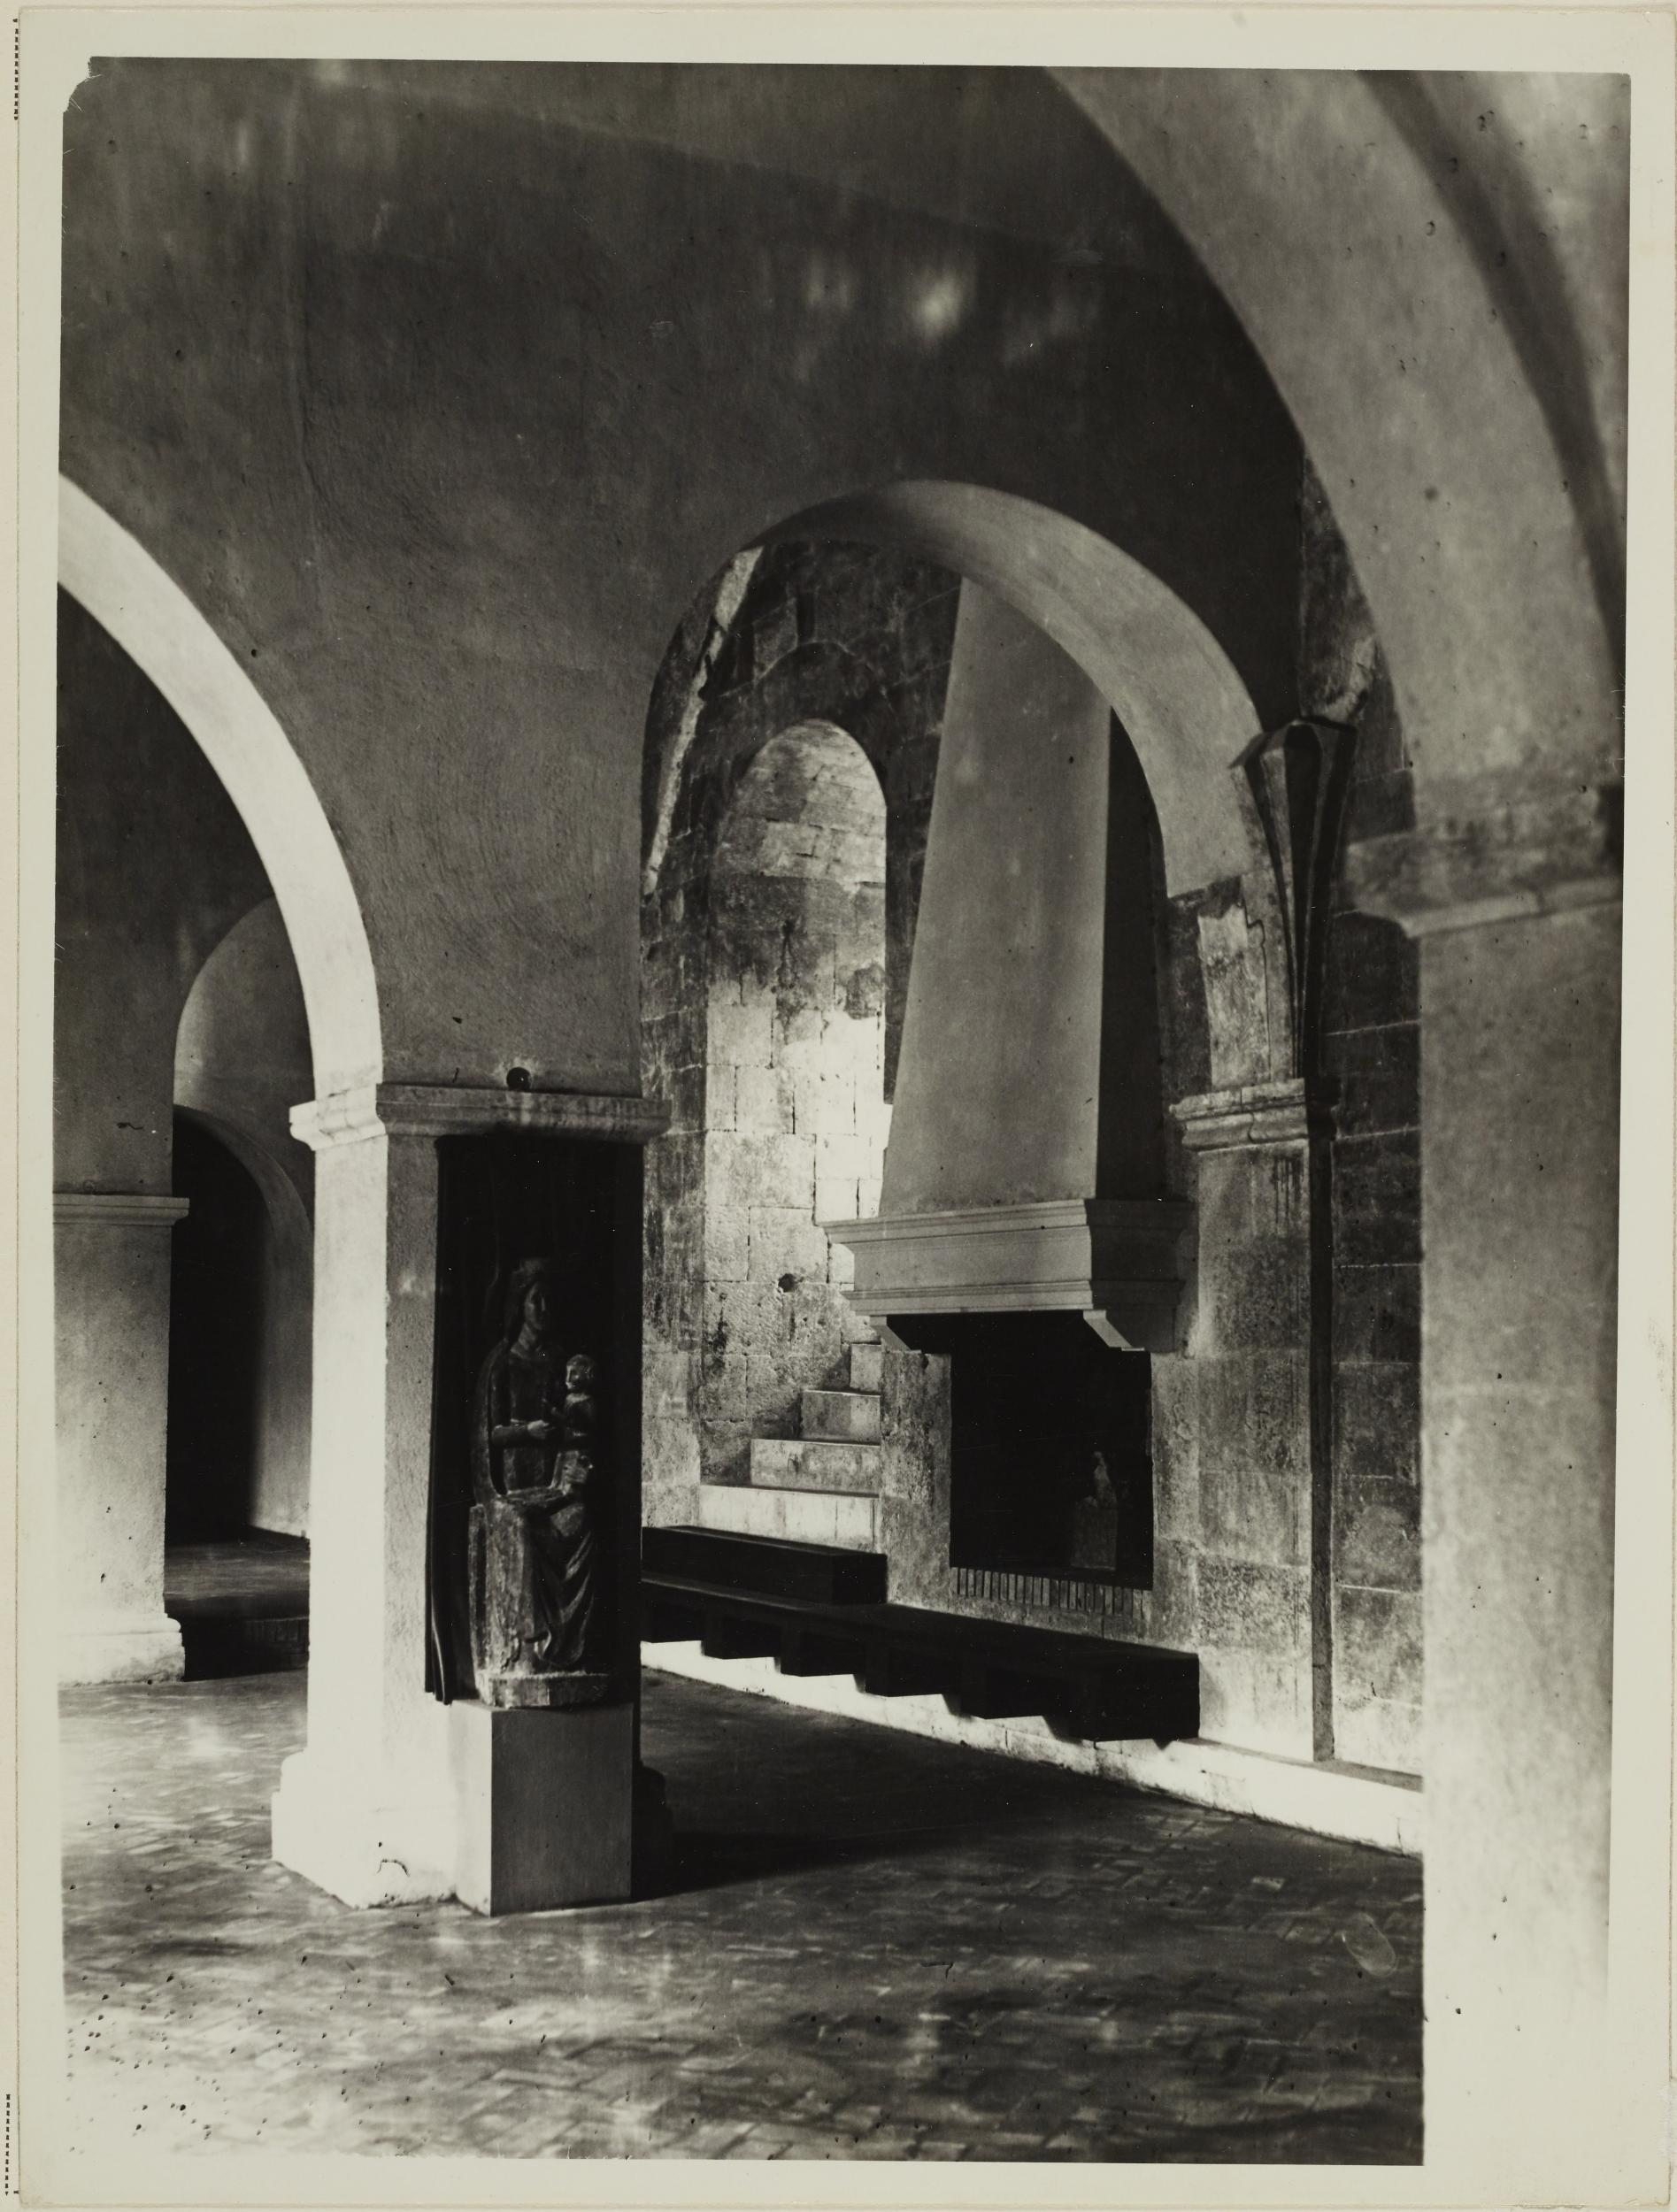 Fotografo non identificato, Bari - Castello Svevo, allestimento della mostra per la XI settimana dei musei, 1951-1975, gelatina ai sali d'argento/carta, MPI6018850